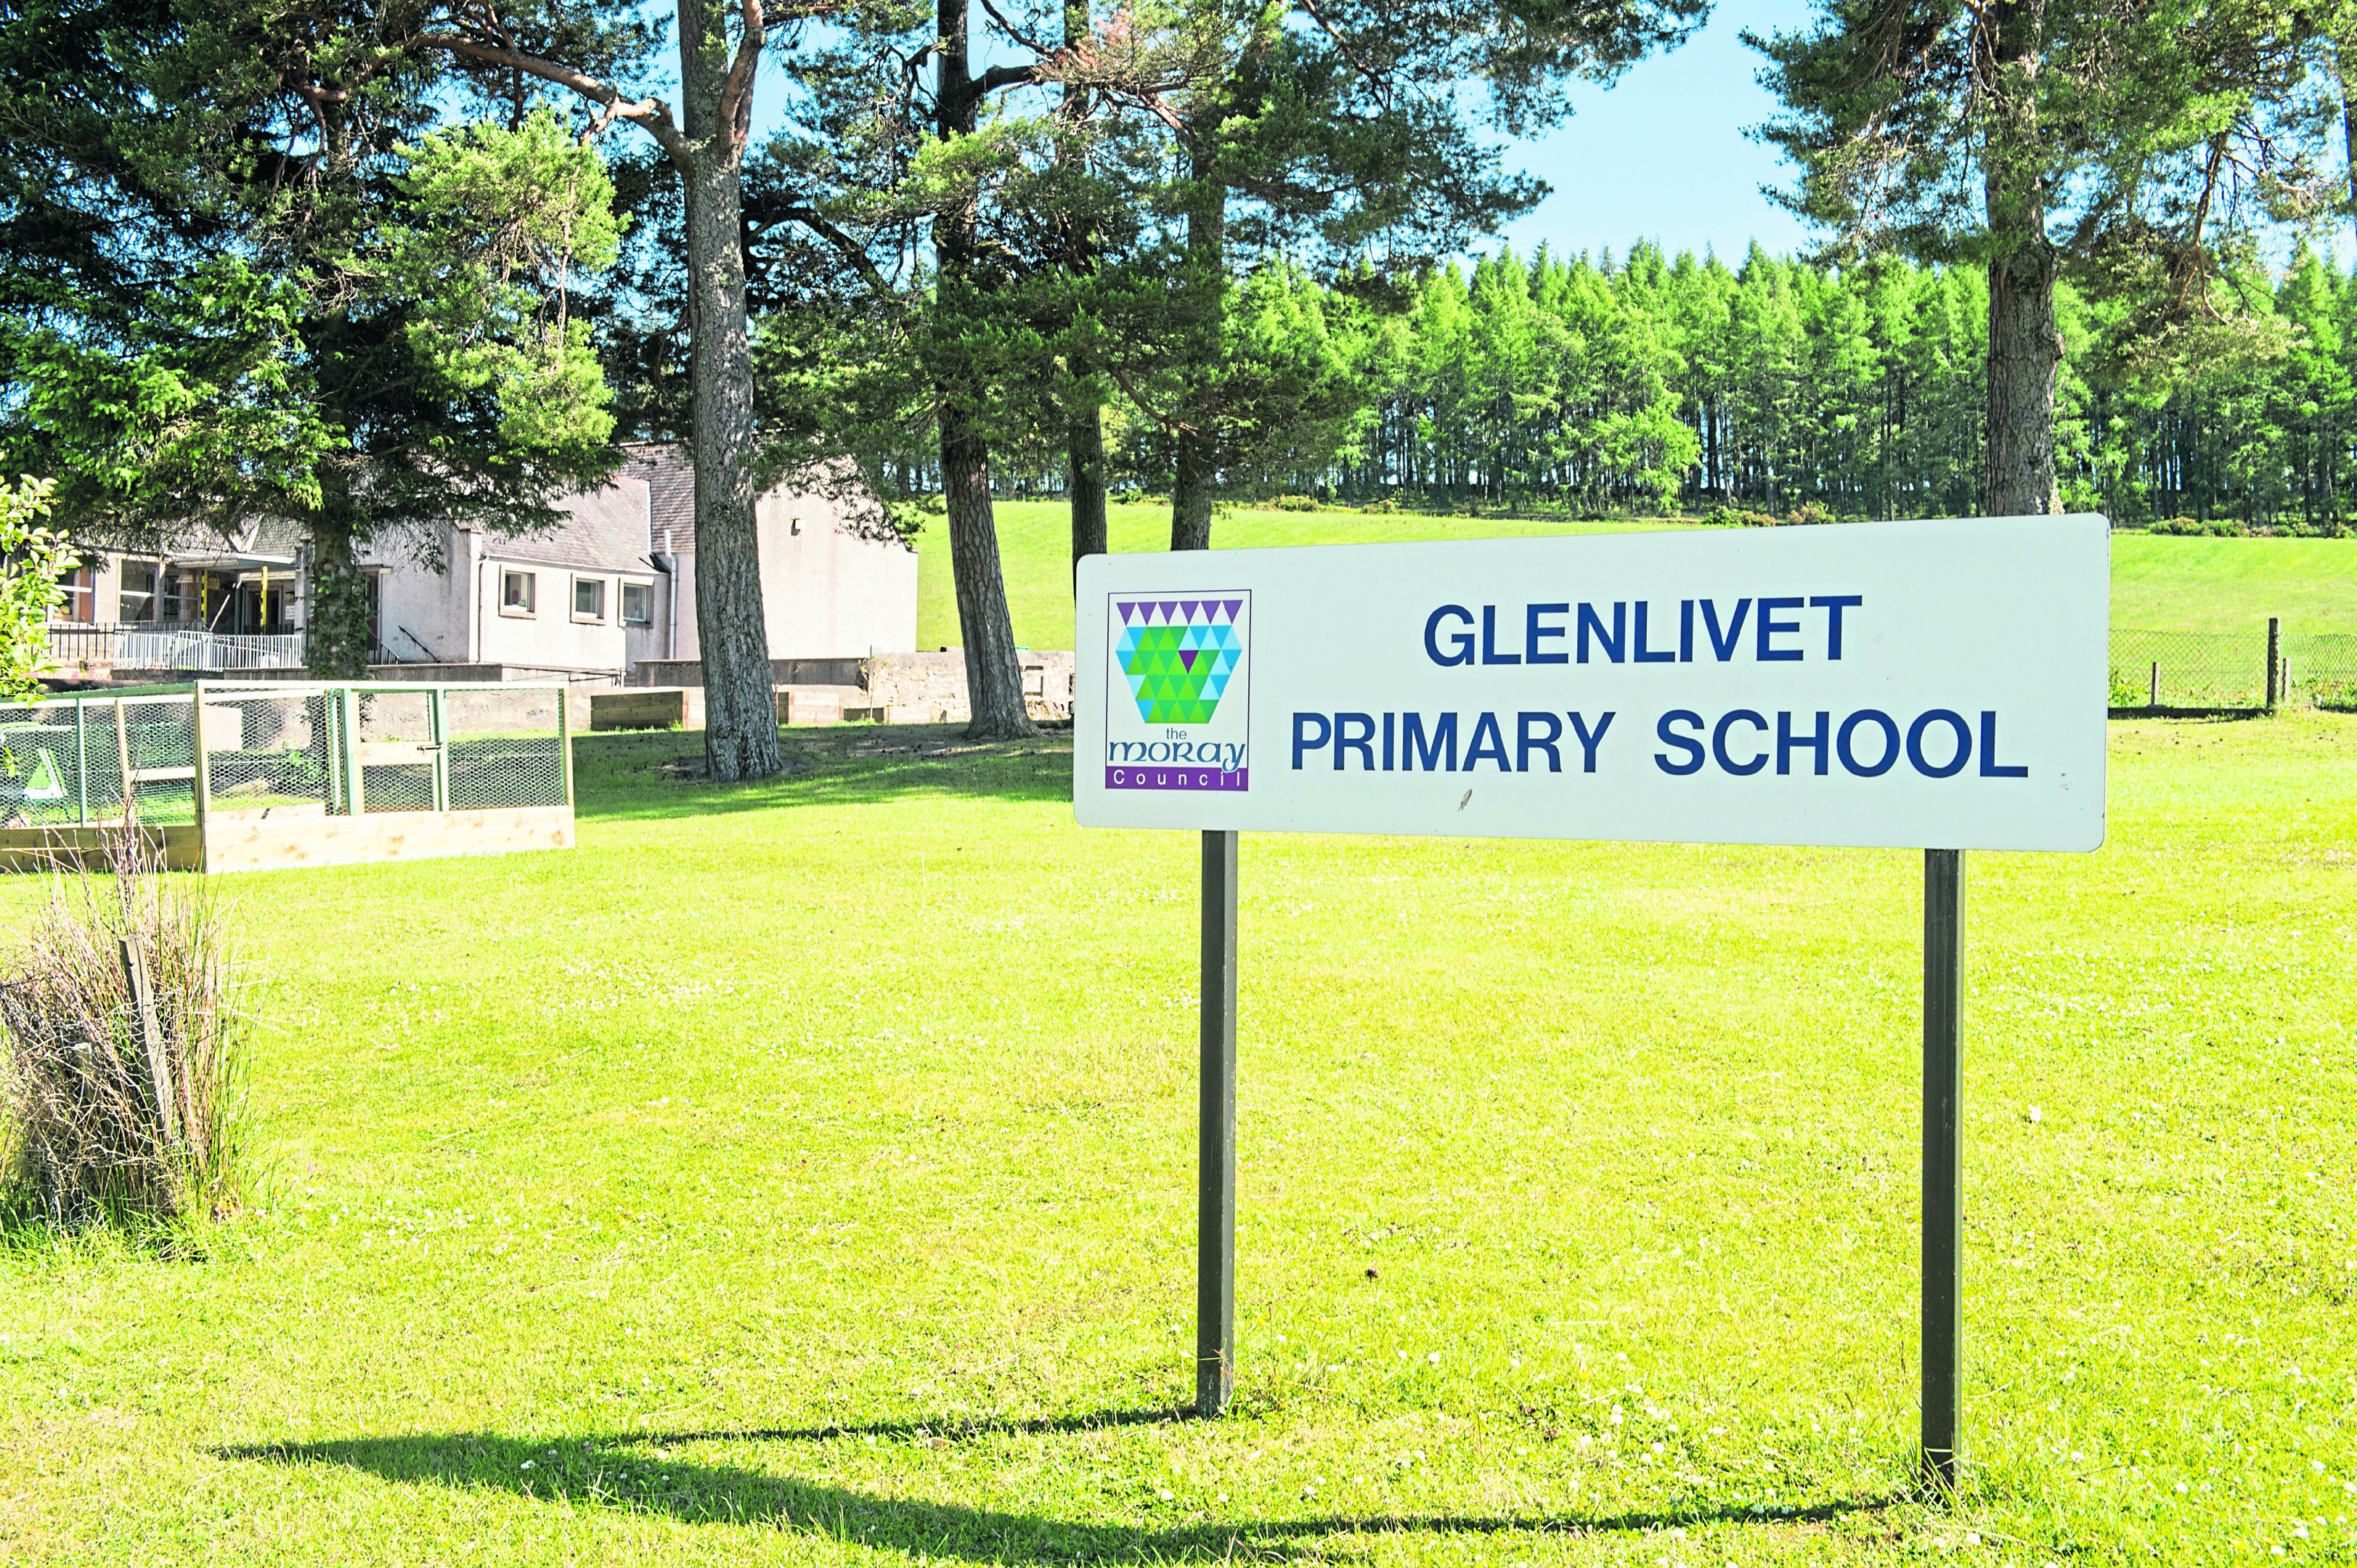 Glenlivet Primary School in Moray